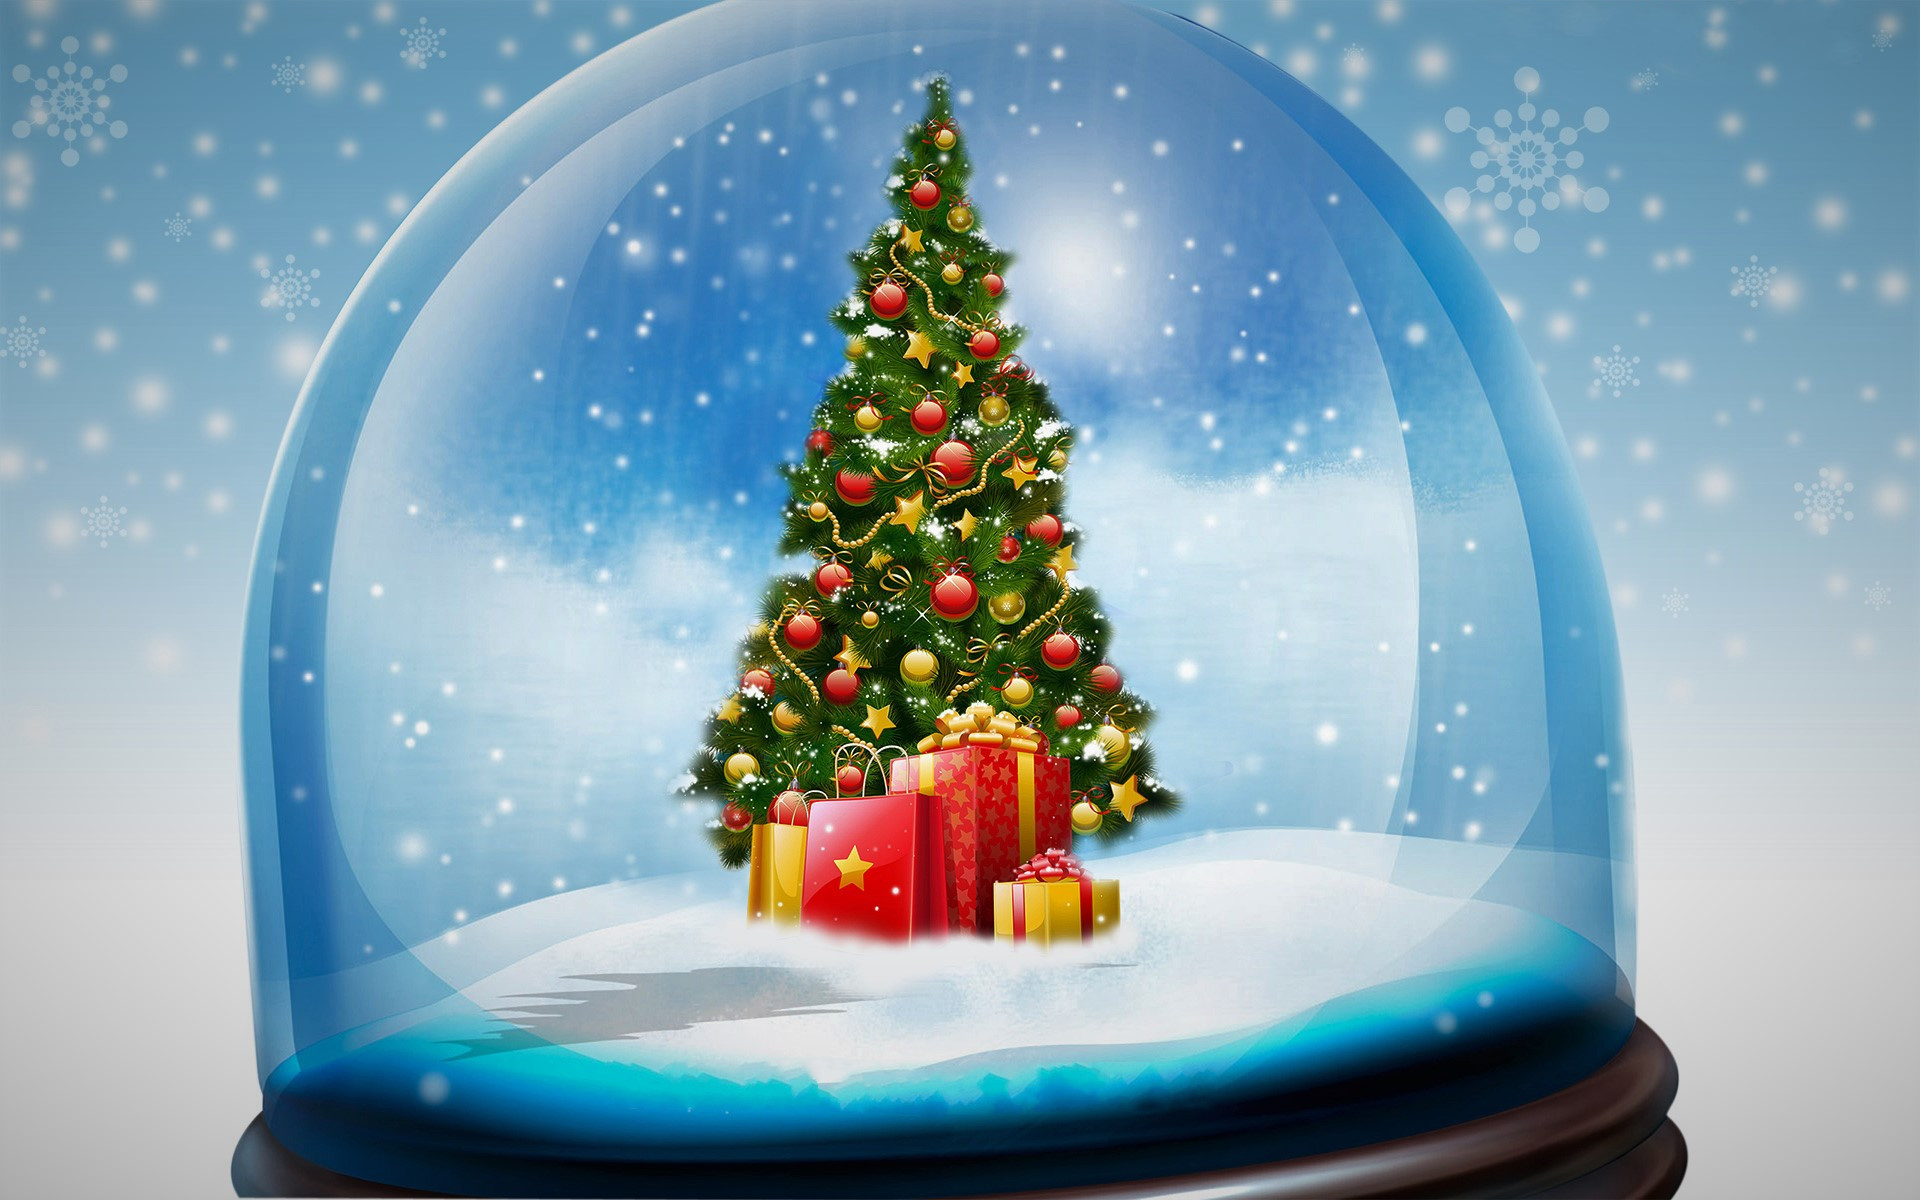 1920x1200 Holiday - Christmas Holiday Snow Globe Christmas Tree Christmas Ornaments  Gift Wallpaper